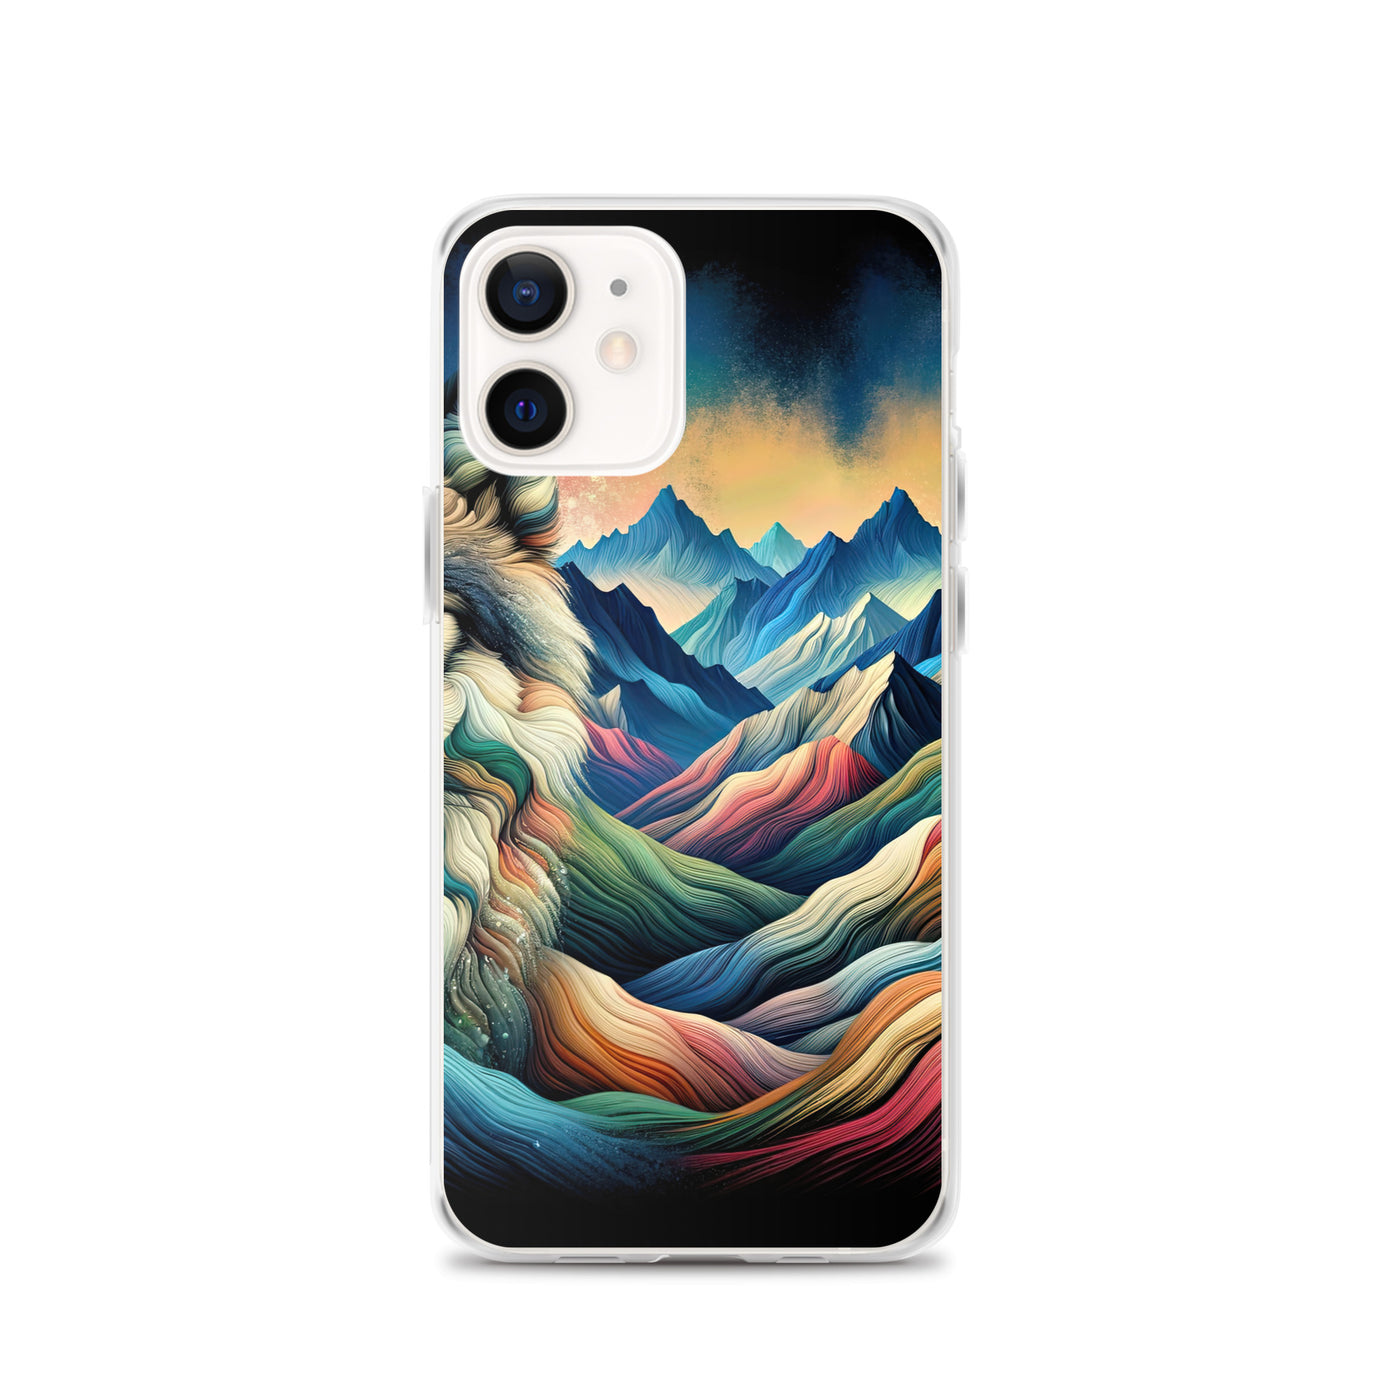 Traumhaftes Alpenpanorama mit Wolf in wechselnden Farben und Mustern (AN) - iPhone Schutzhülle (durchsichtig) xxx yyy zzz iPhone 12